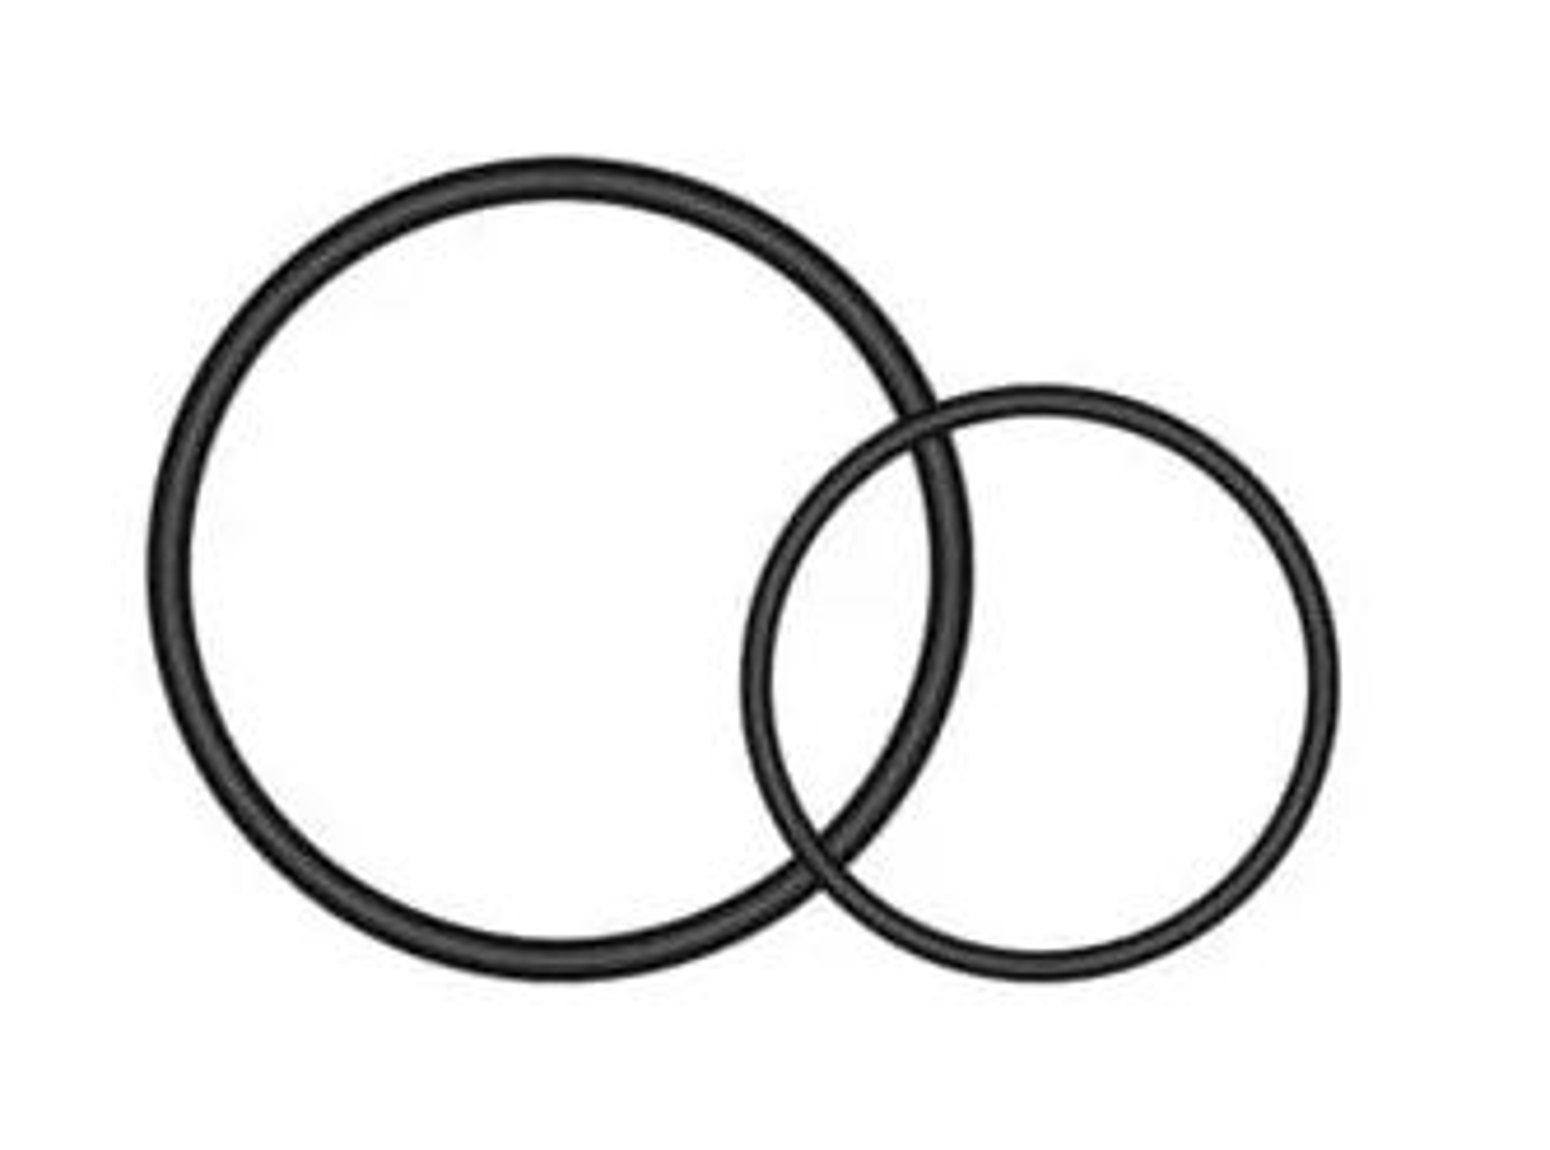 Imagem de Garmin O-rings para suporte universal com quarto de volta Varia™ para espigões de selim